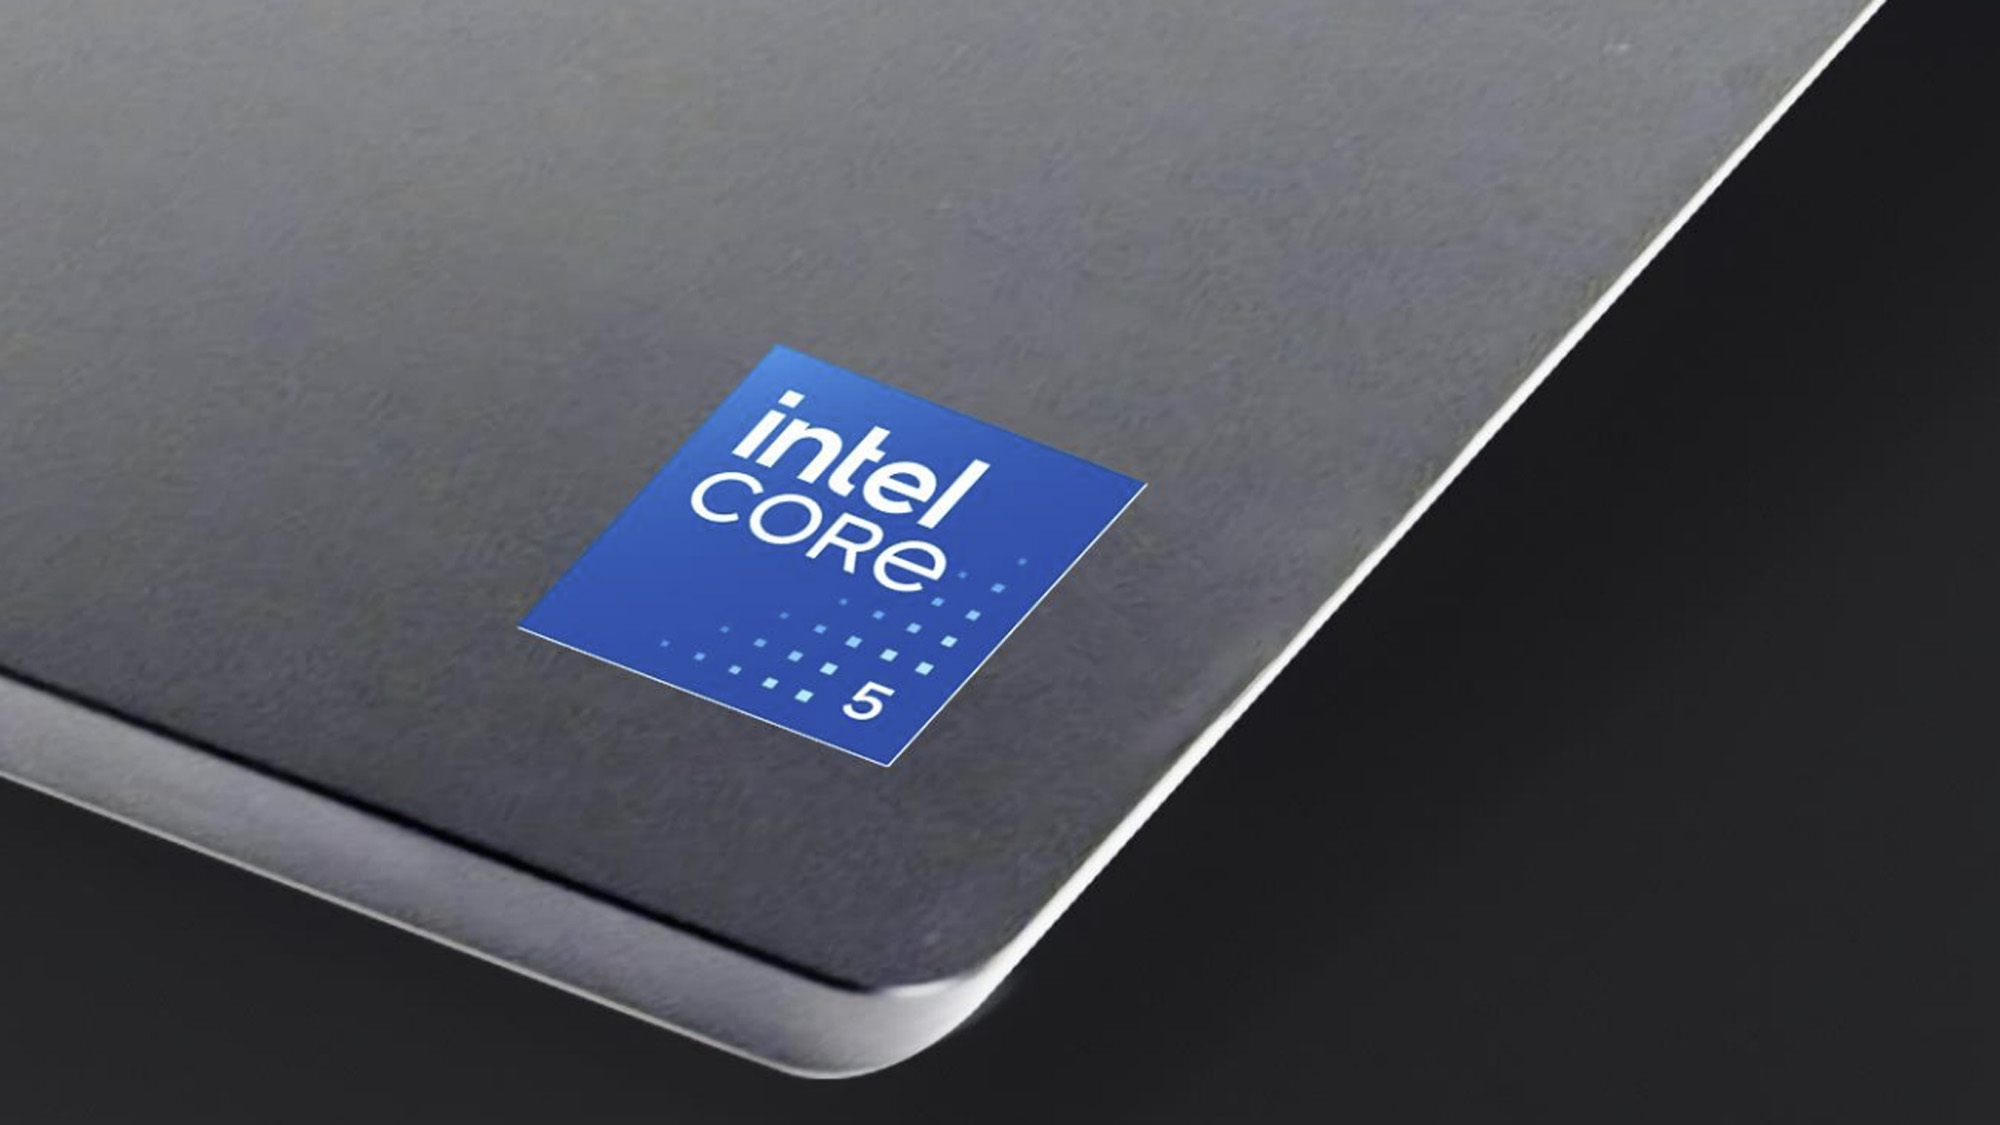 Le nouveau badge Intel Core 5 sur un ordinateur portable